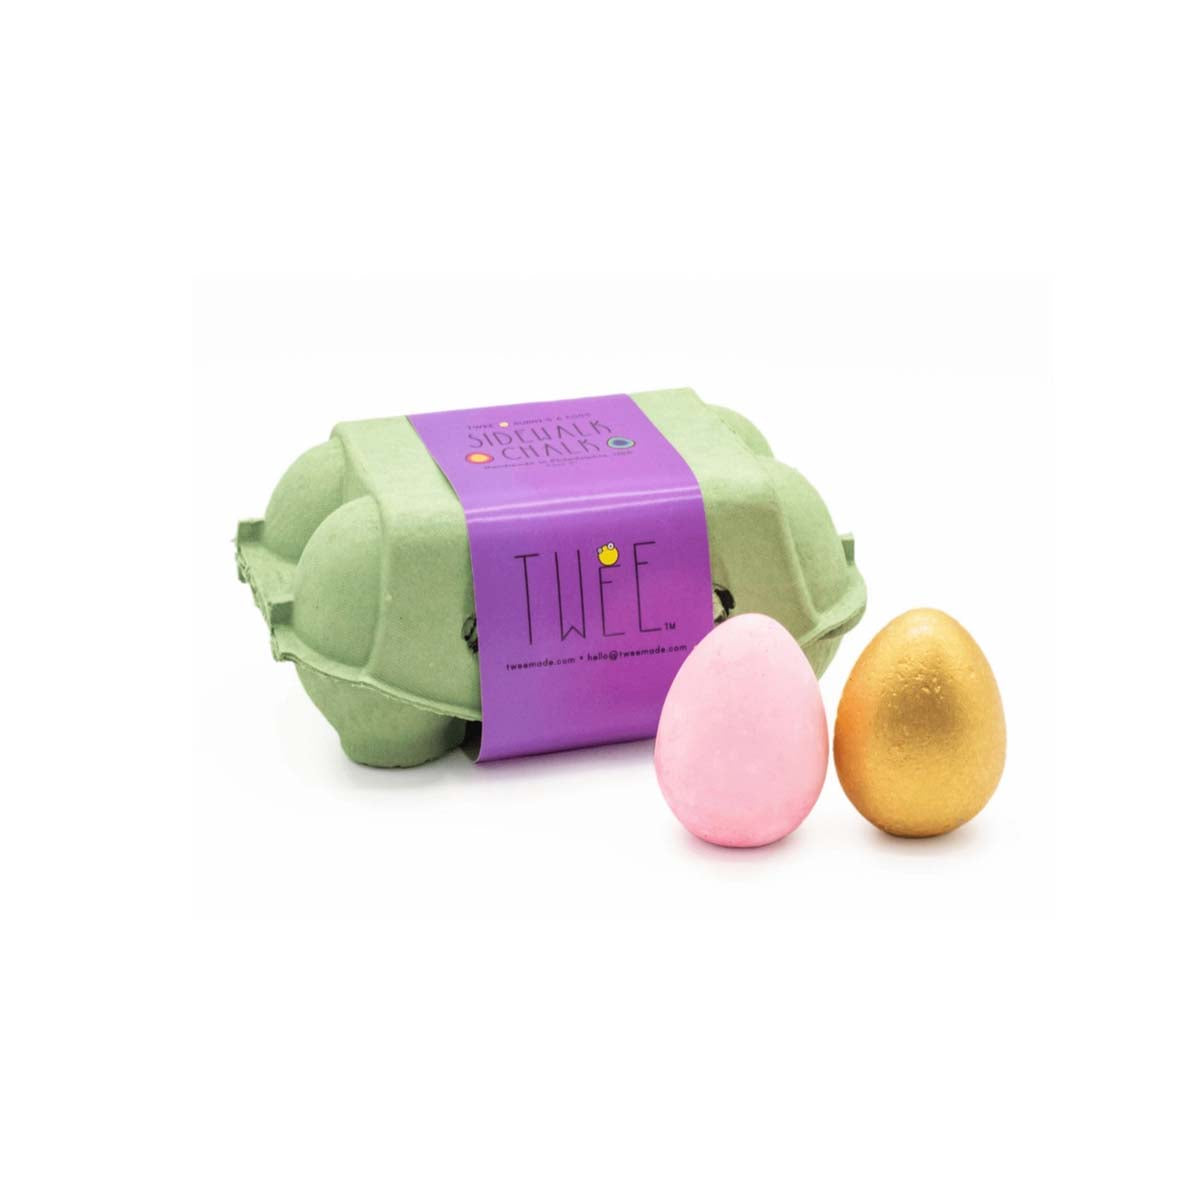 Voor creatieve kindjes: stoepkrijt bunny's eggs van het merk TWEE. Een set van 6 eieren in verschillende kleuren. Biologisch afbreekbaar, herbruikbaar en niet toxisch en plasticvrij. VanZus